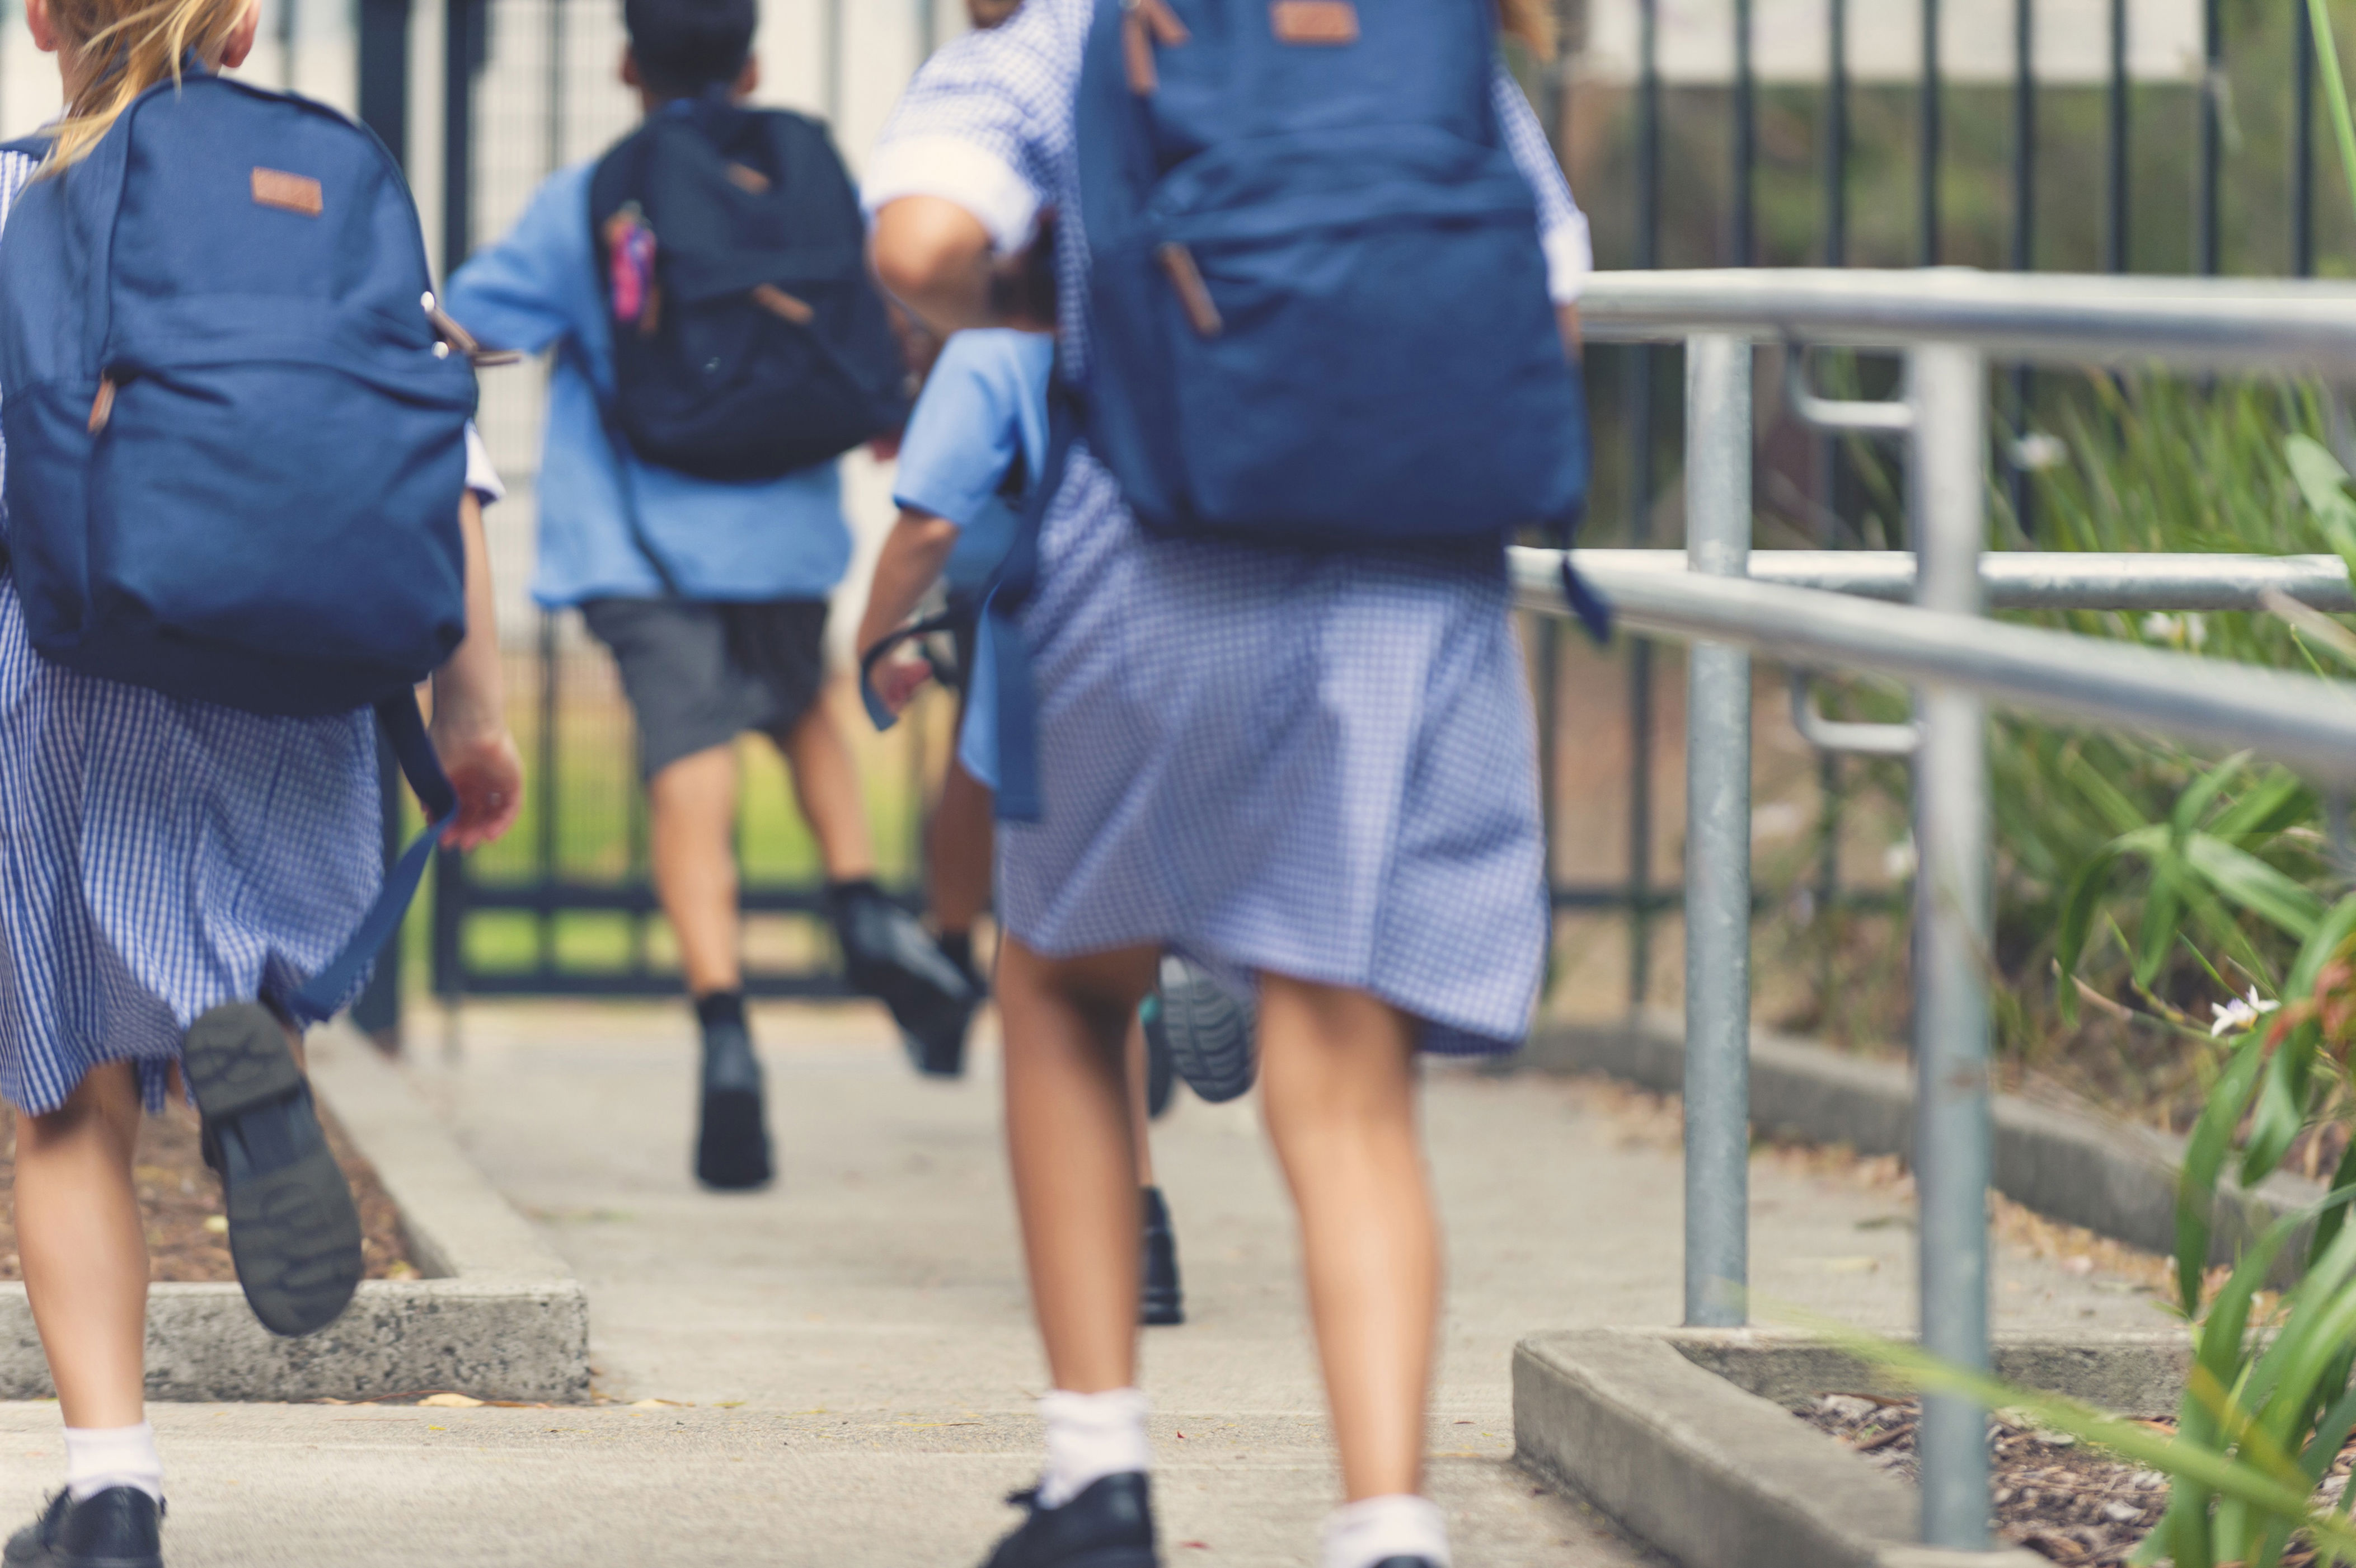 nsw public schools face huge budget cuts as student enrolments drop